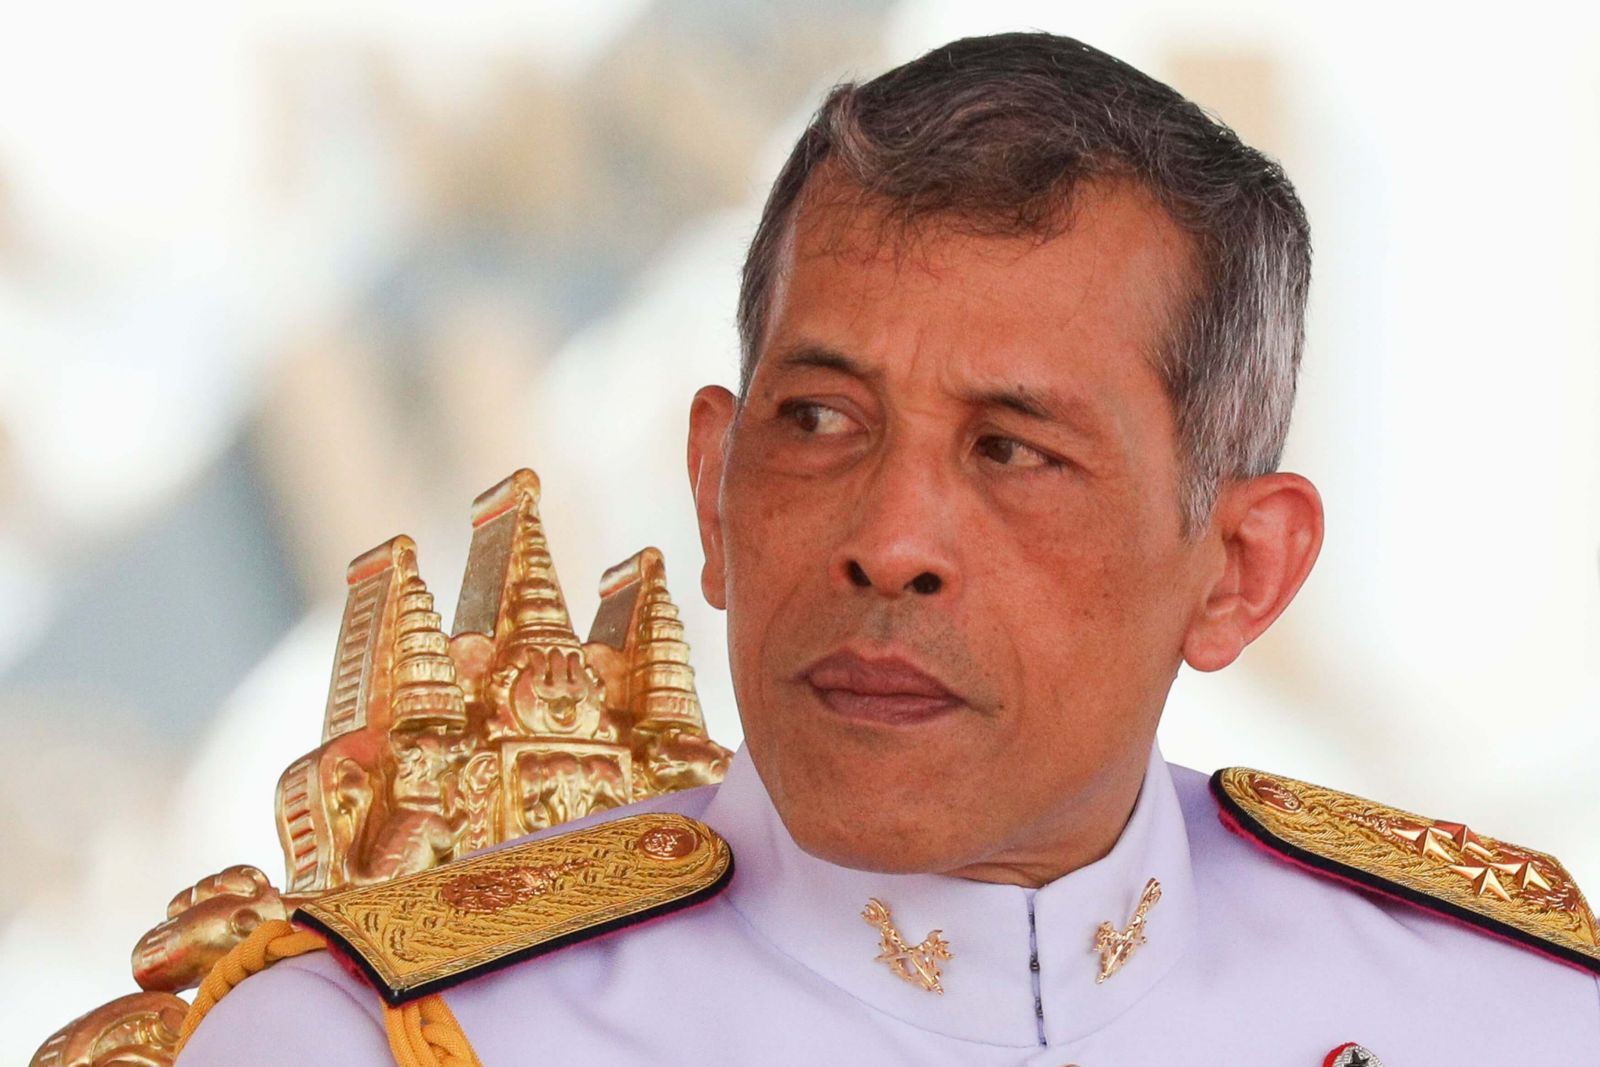 Le nouveau roi de Thaïlande Vajiralongkorn attend encore d'être officiellement couronné. (Source : Business Times)